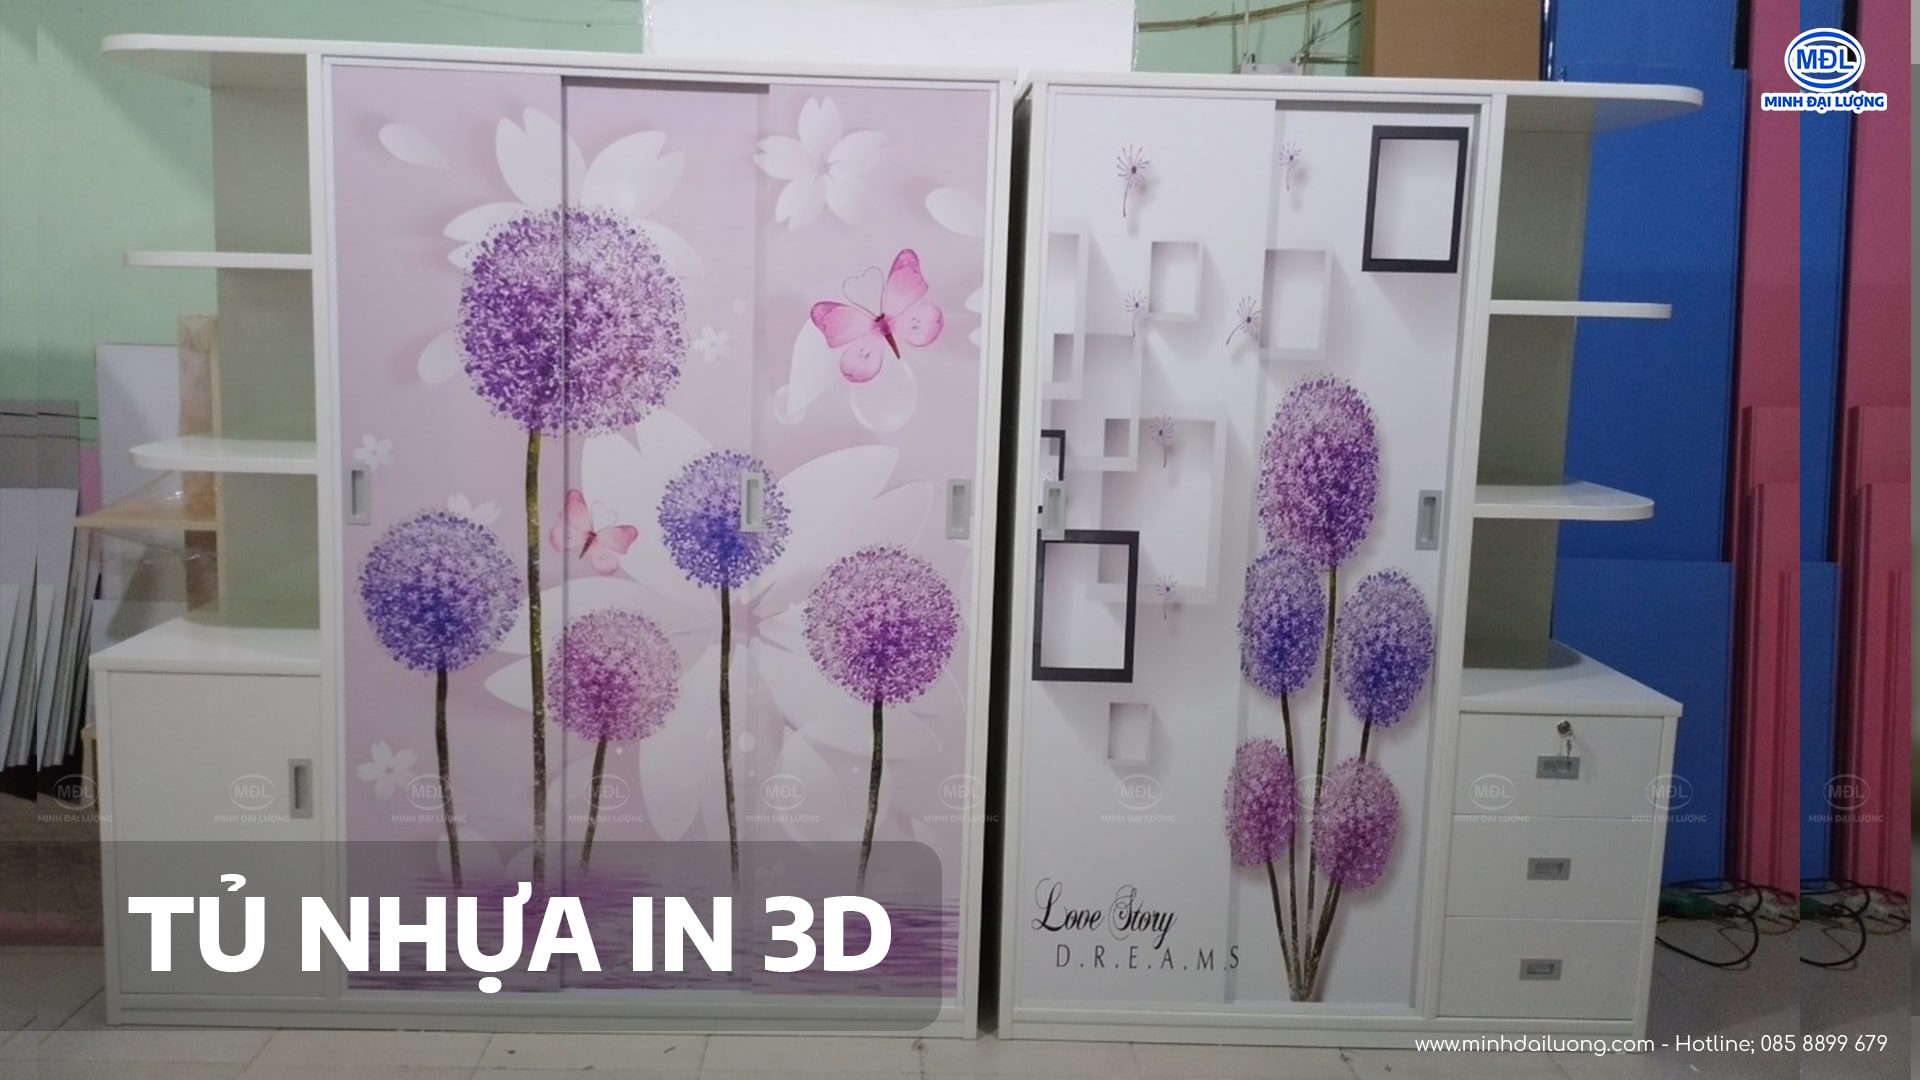 Tủ nhựa Đài Loan in 3D - minhdailuong.com